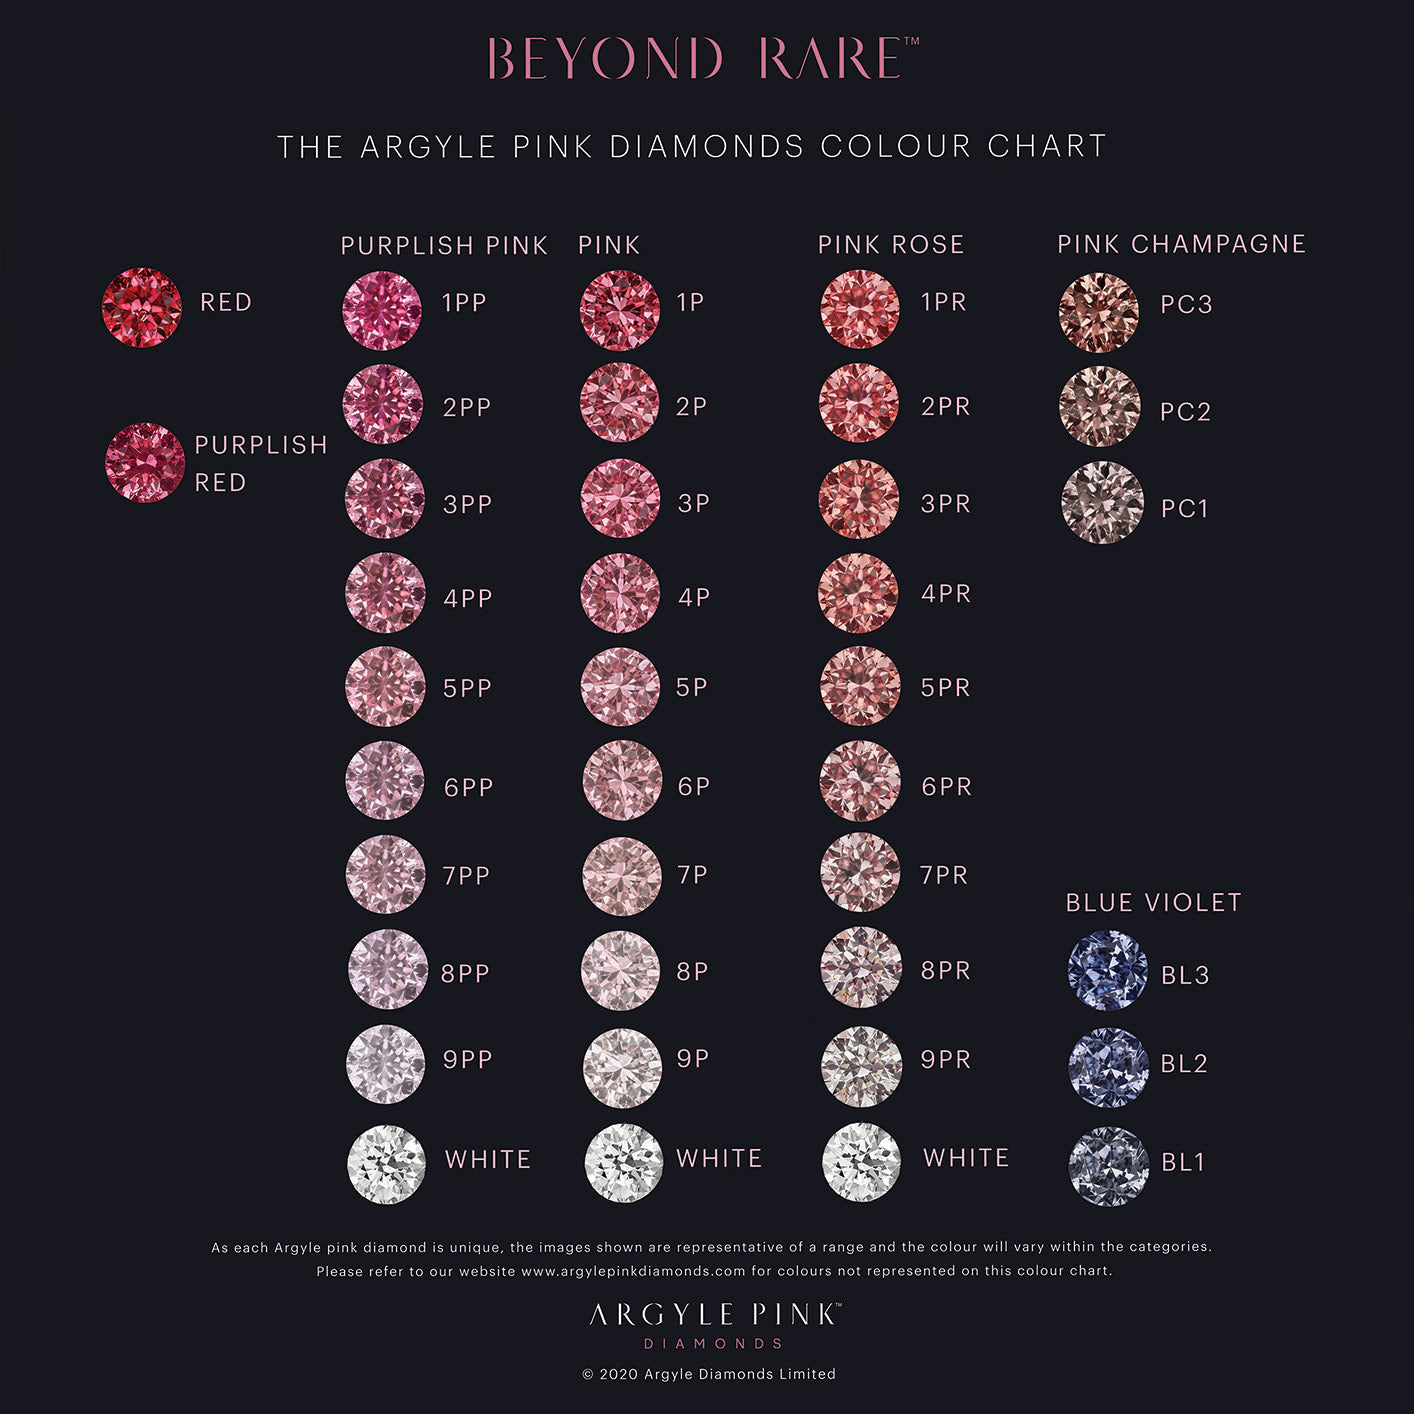 The Argyle Pink Diamonds Colour Chart